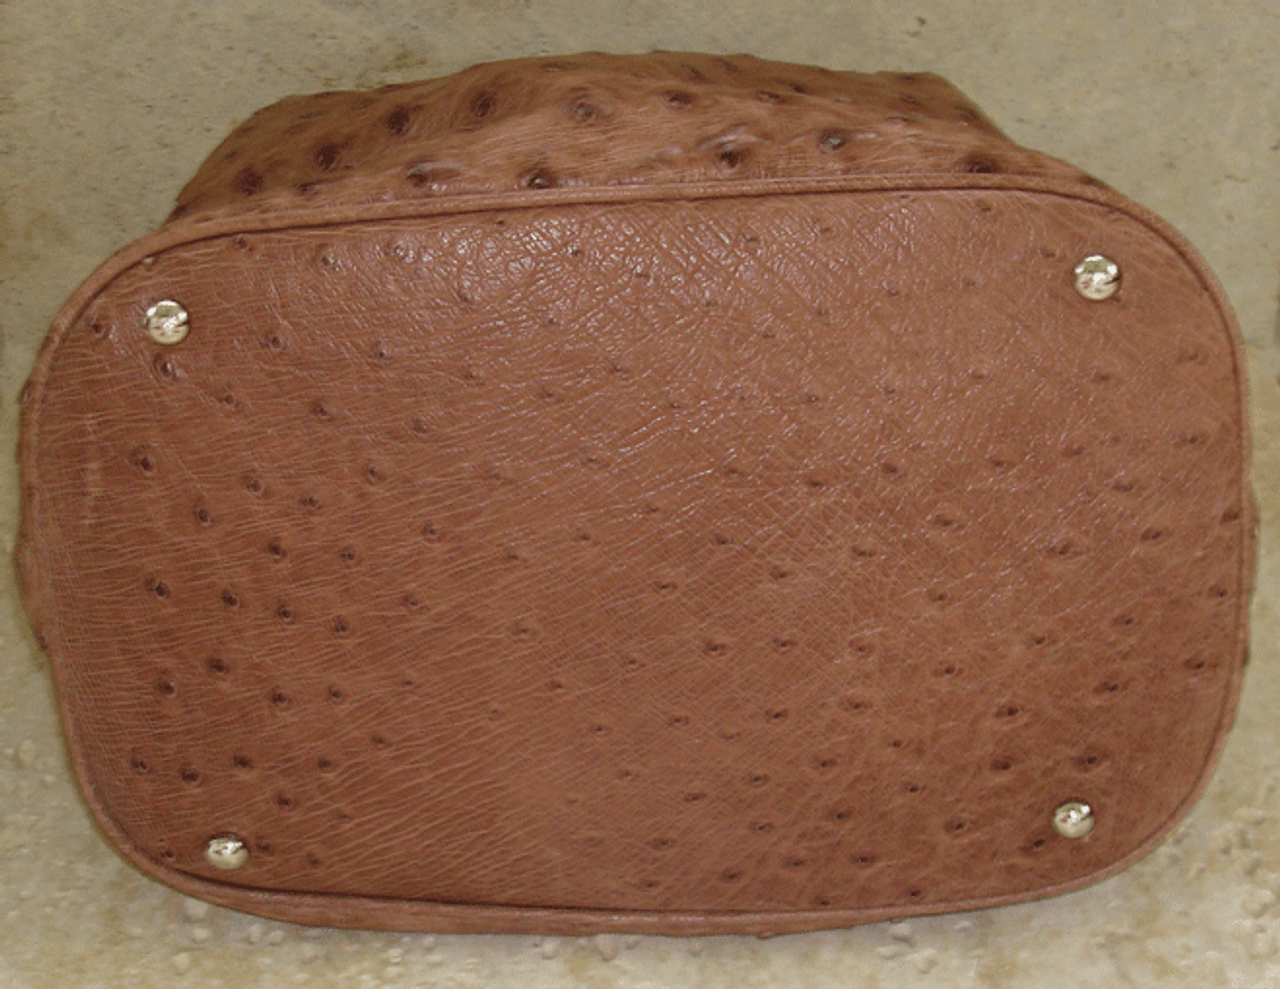 1990's-2000's BRONZE Metallic Genuine Ostrich Skin Birkin Style Handbag -  Vintage Skins